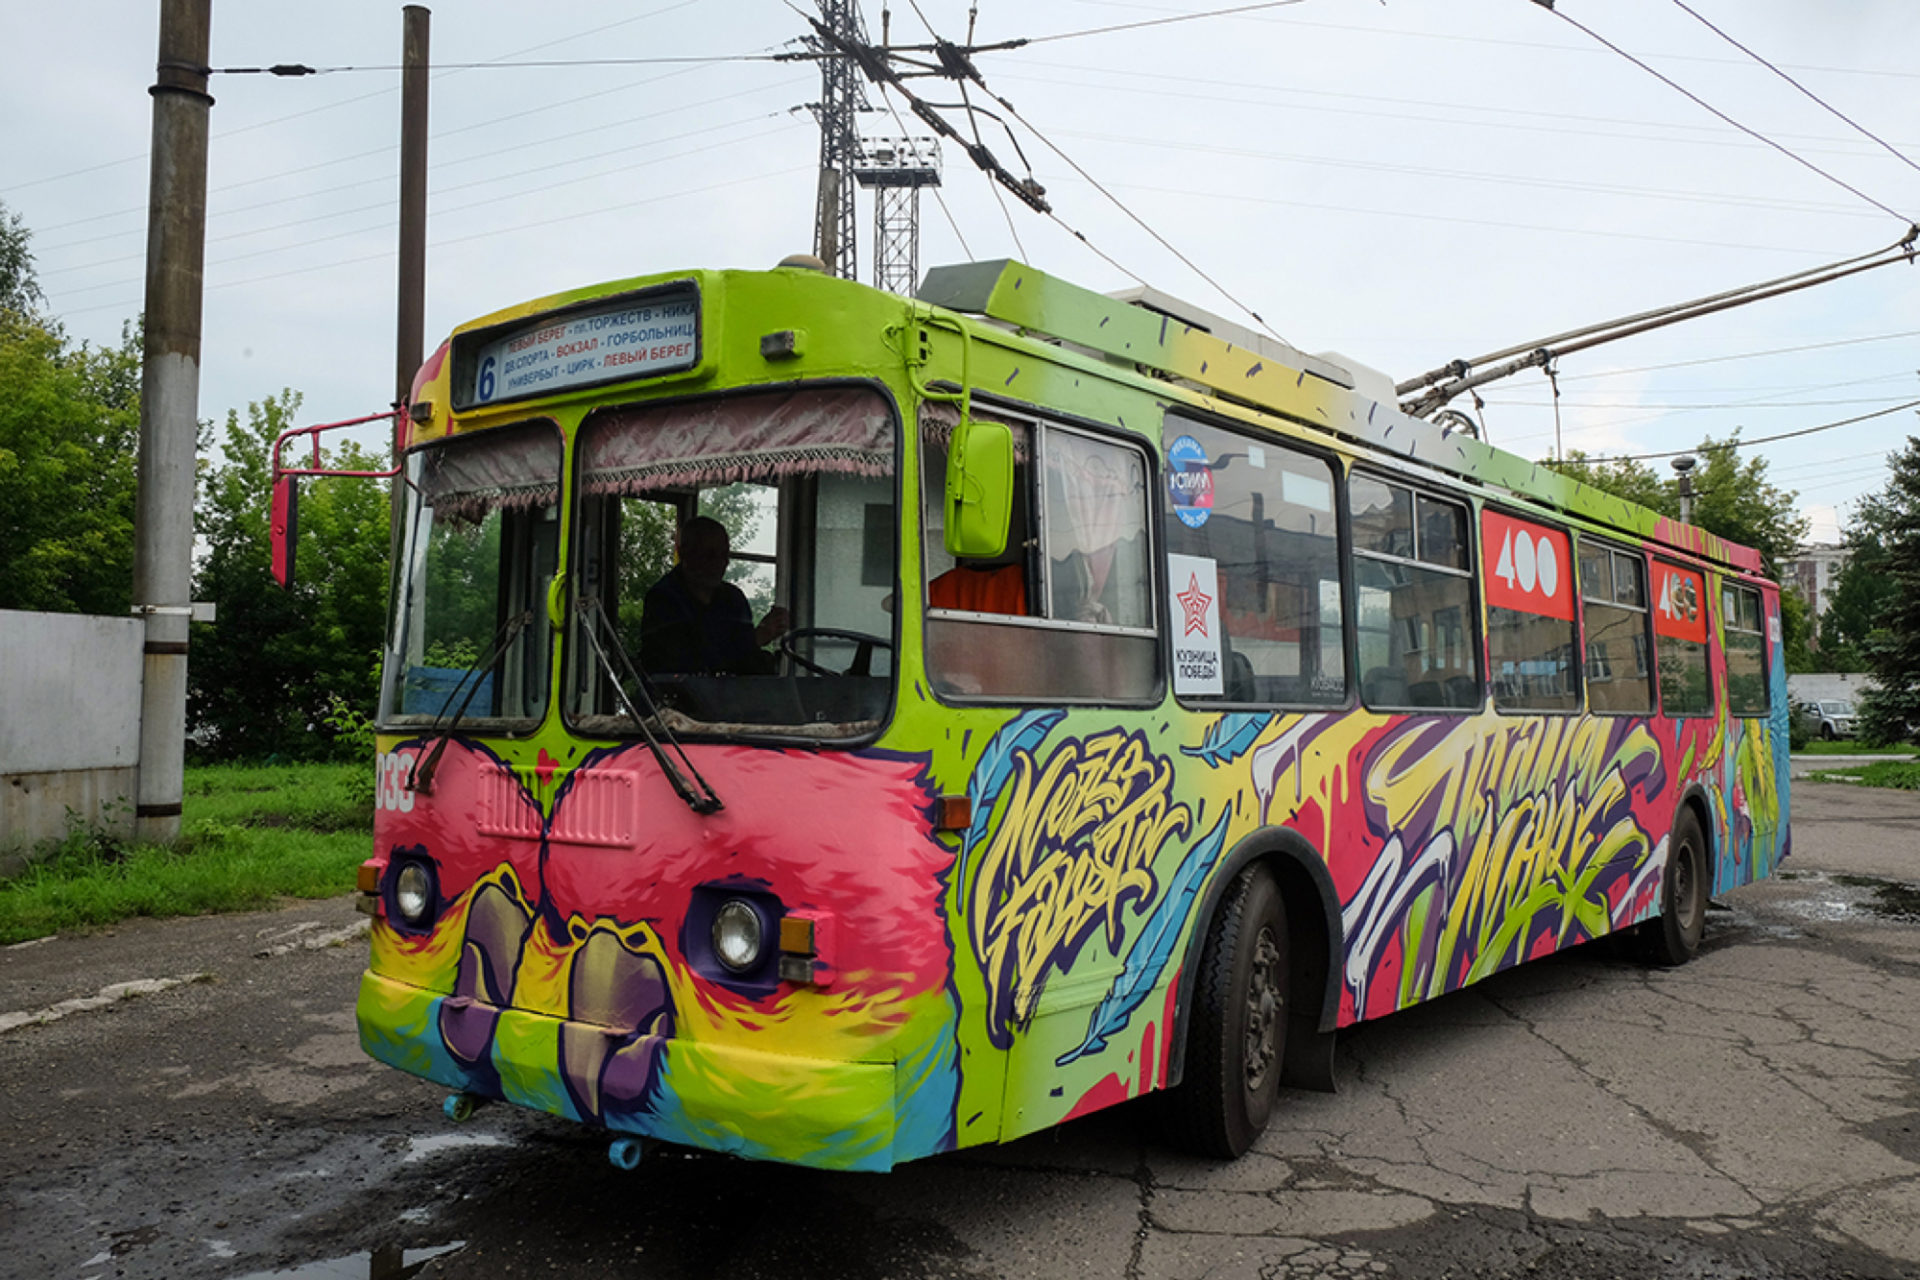 Graffiti bus in russia - Mezzo + Fans